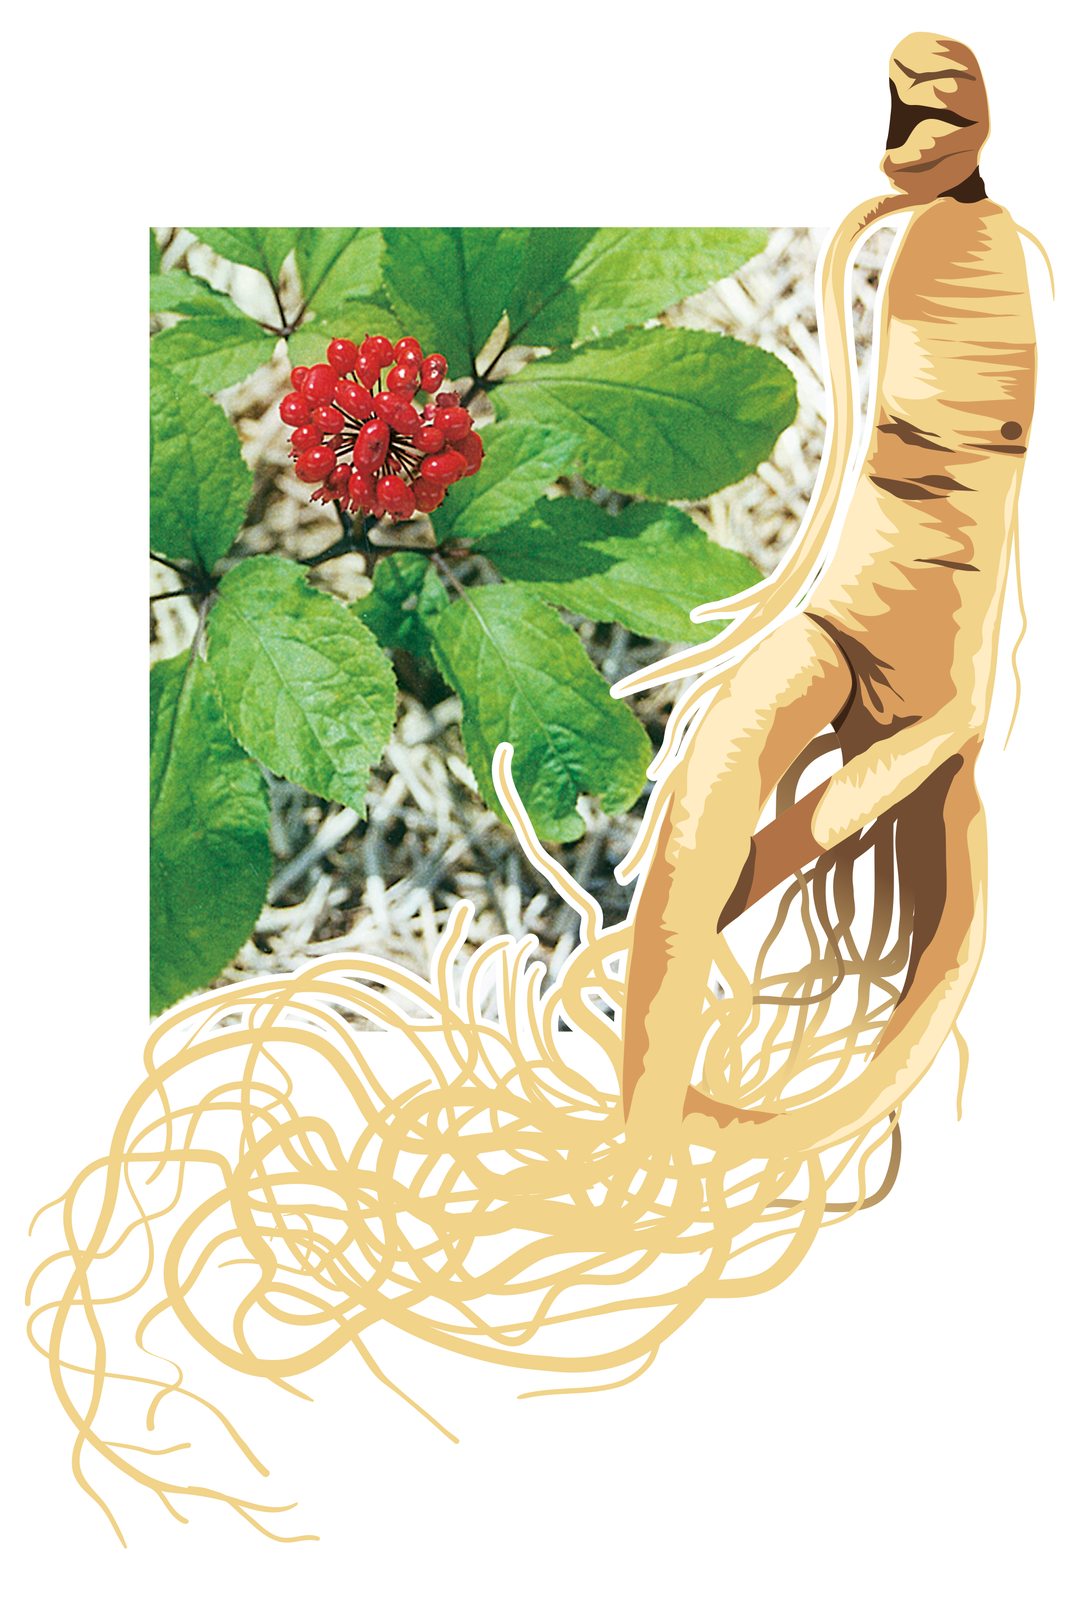 Ilustracja przedstawia fotografię gałązki rośliny z dużymi liśćmi i czerwonymi kulistymi owocami. Obok rysunek jej korzenia w kolorze jasnobrązowym. Korzeń ma kształt podobny do sylwetki człowieka. To żeń-szeń pięciolistny. środowisku naturalnym i jego korzeń.